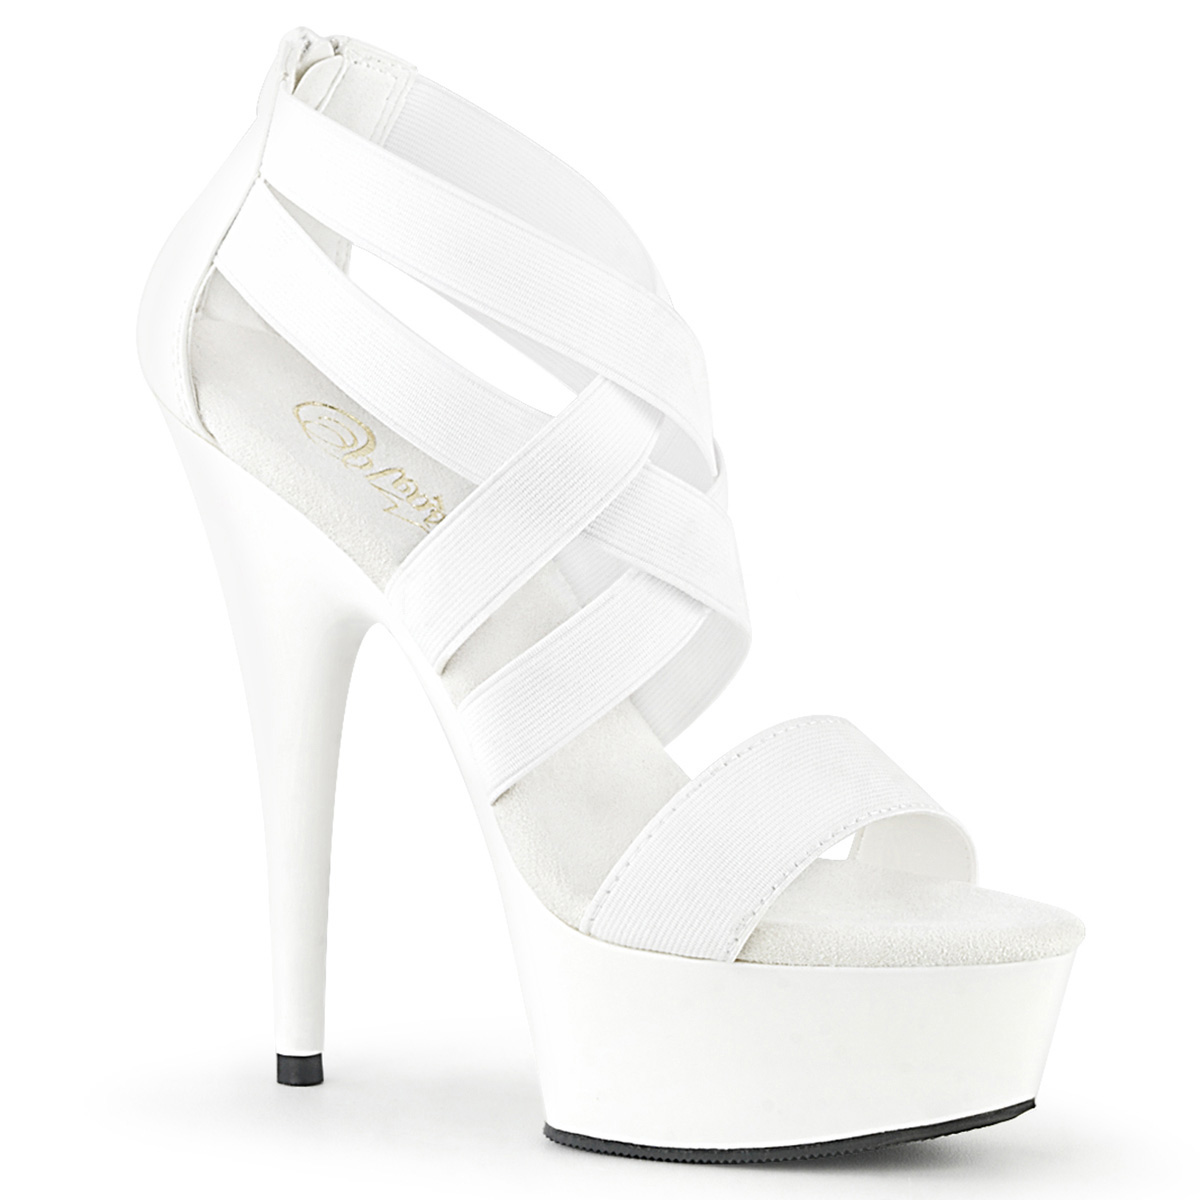 white platform high heels